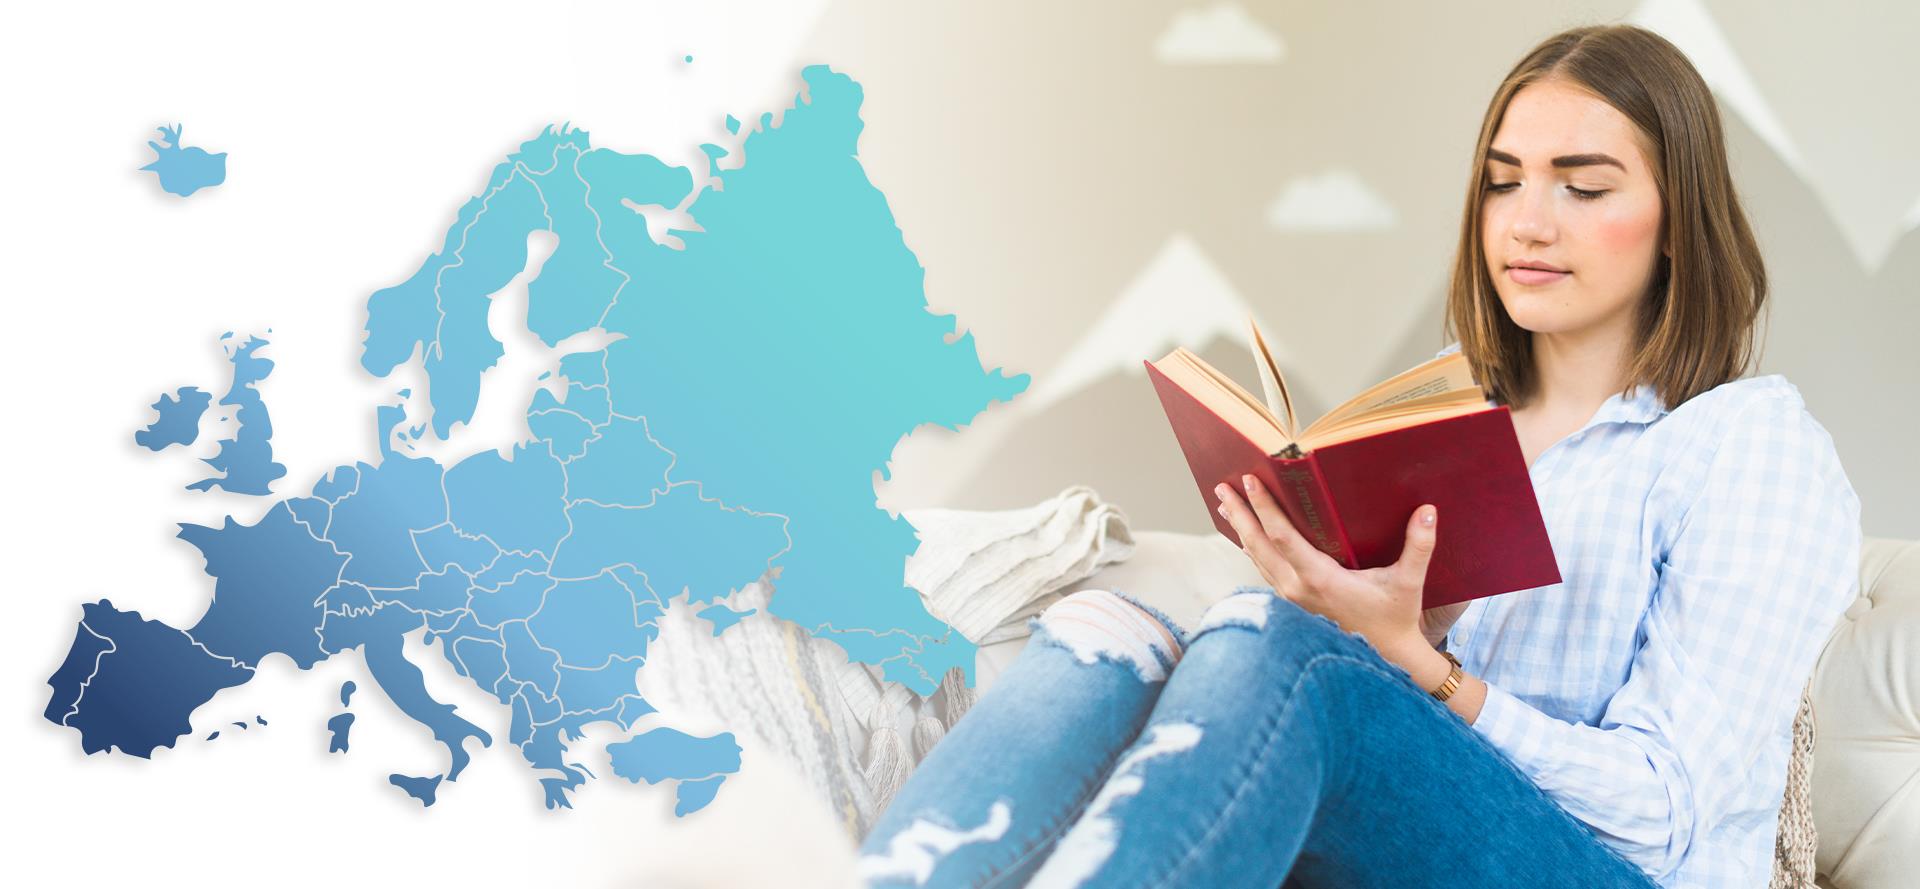 Egy új kutatásból kiderül, melyik európai országban olvasnak a legtöbbet – és hol a legkevesebbet